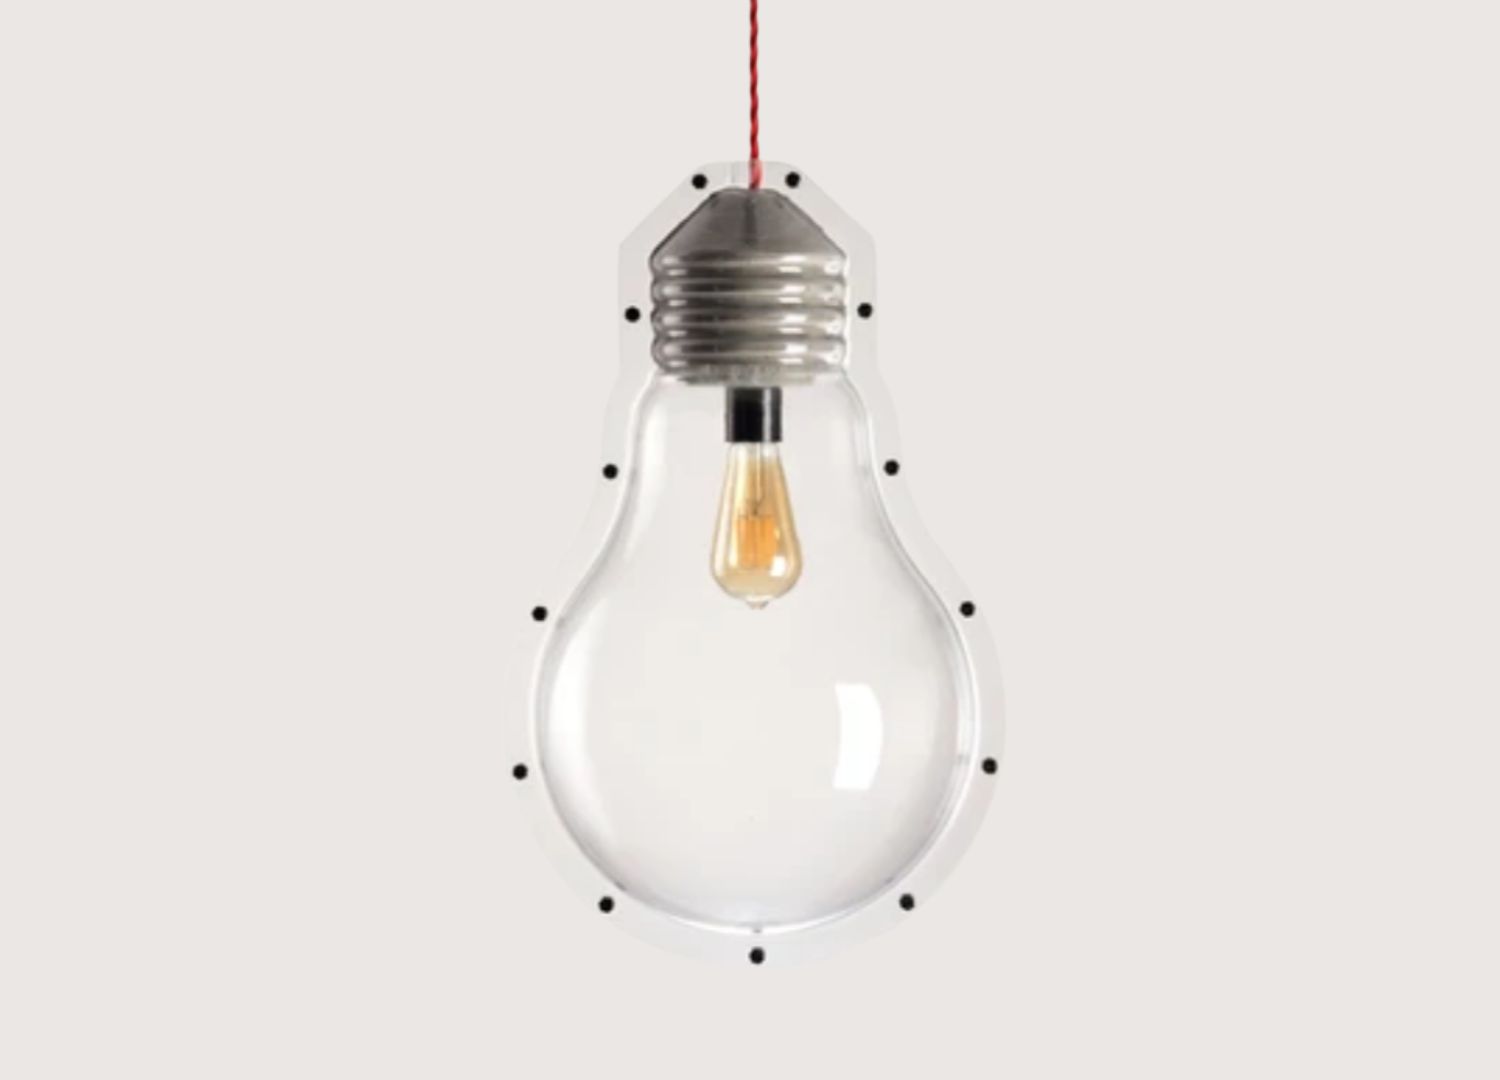 Bulb - Pendant light by Tom Man Design